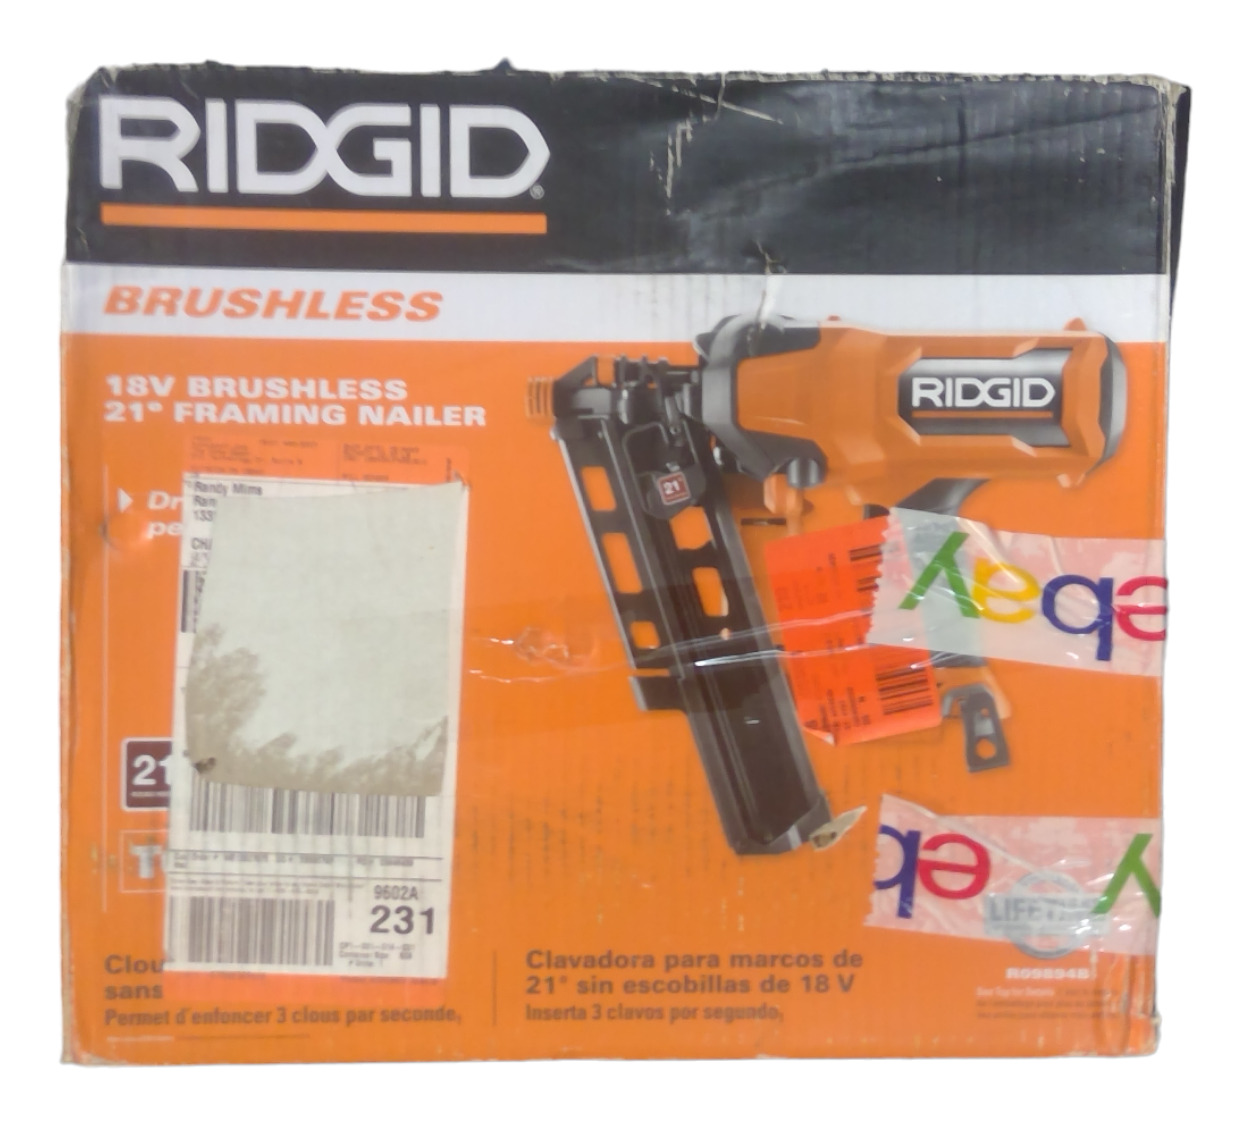 USED - RIDGID R09894B 18V Brushless 21° 3-1/2 in. Framing Nailer (Tool Only)